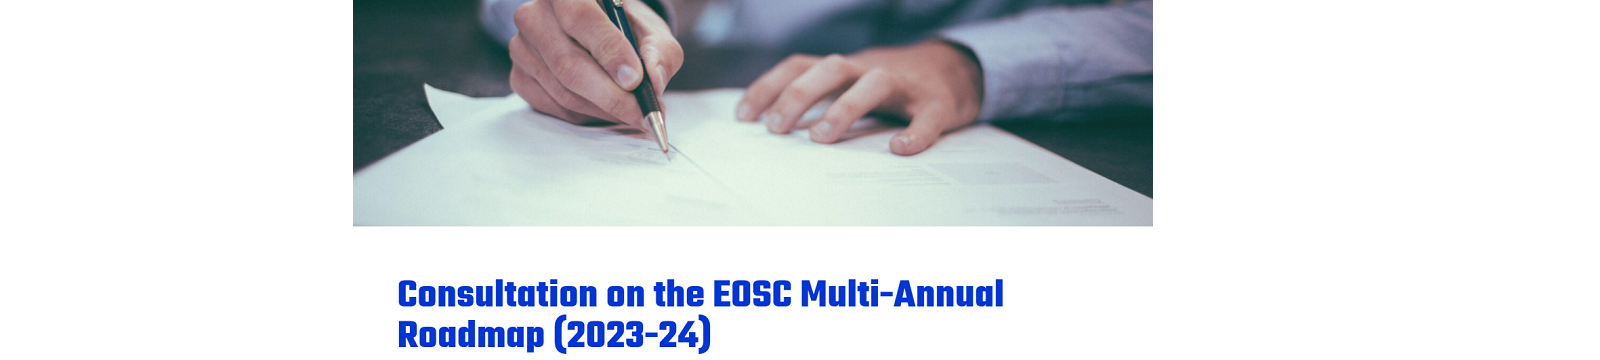 L'associazione EOSC ha lanciato una consultazione per la tabella di marcia pluriennale